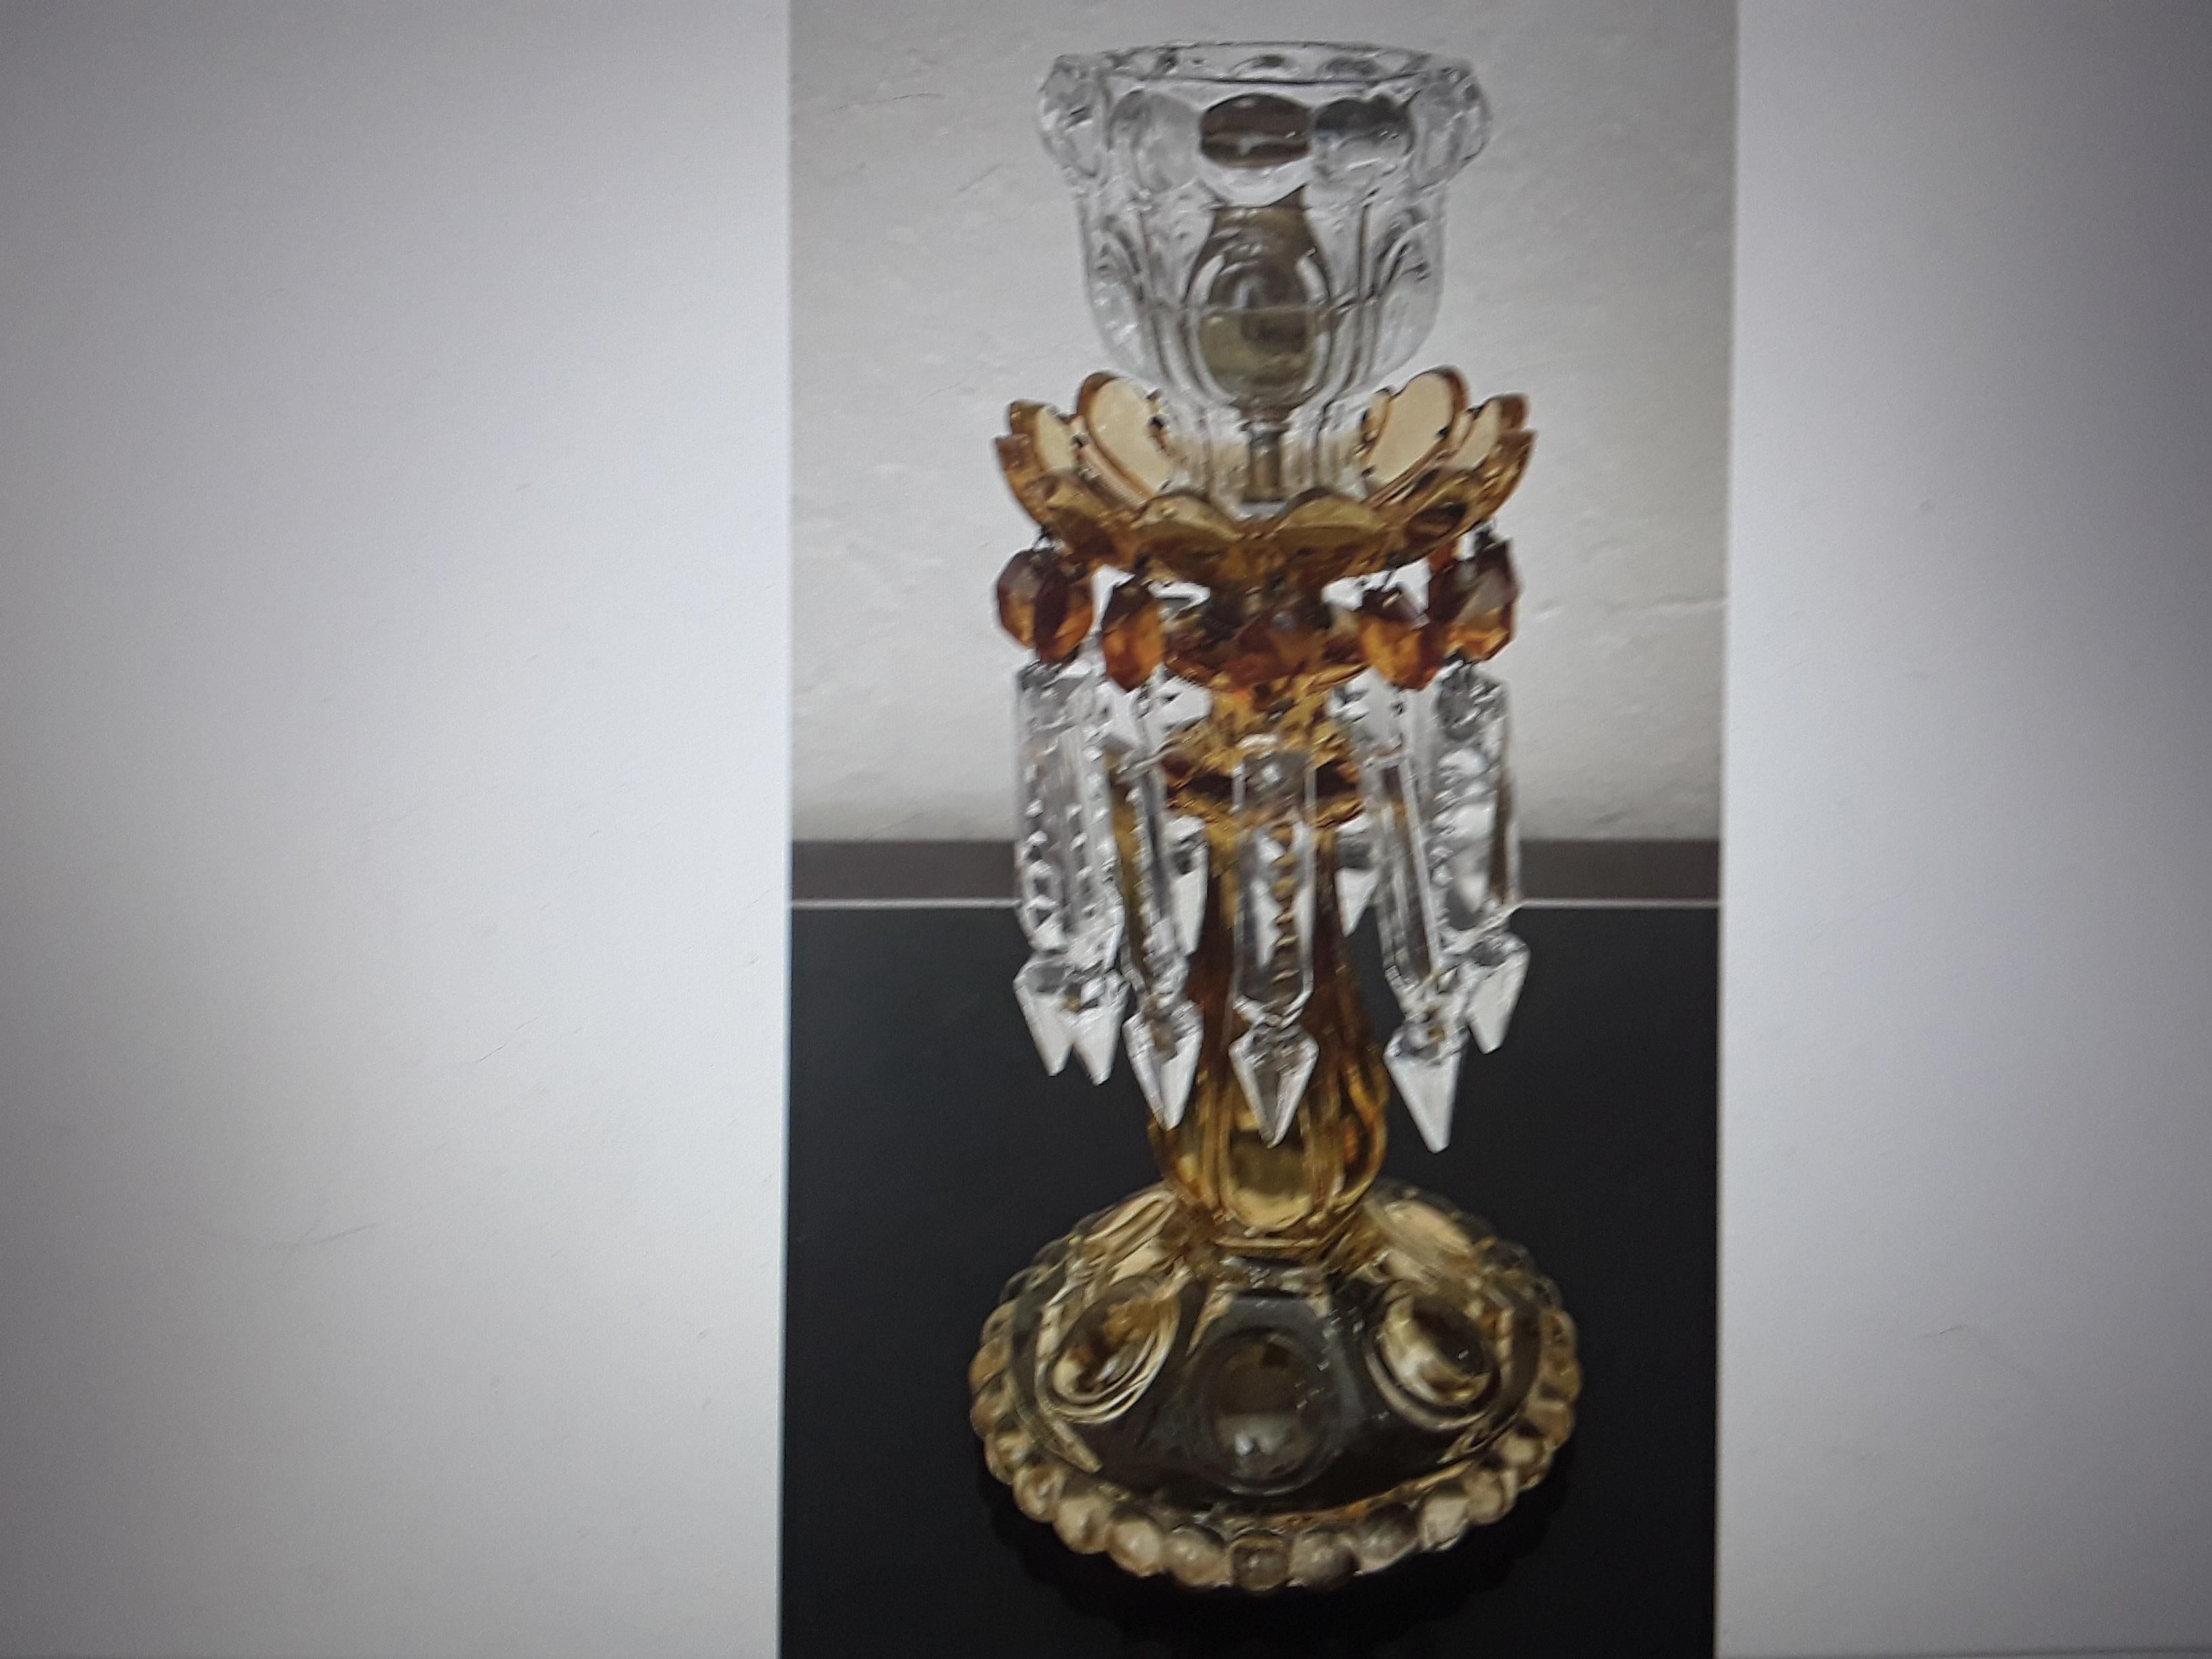 Superbe bougeoir en cristal de couleur ambre datant du milieu des années 1950 et provenant de Baccarat France. Belle pièce pour la Collectional.